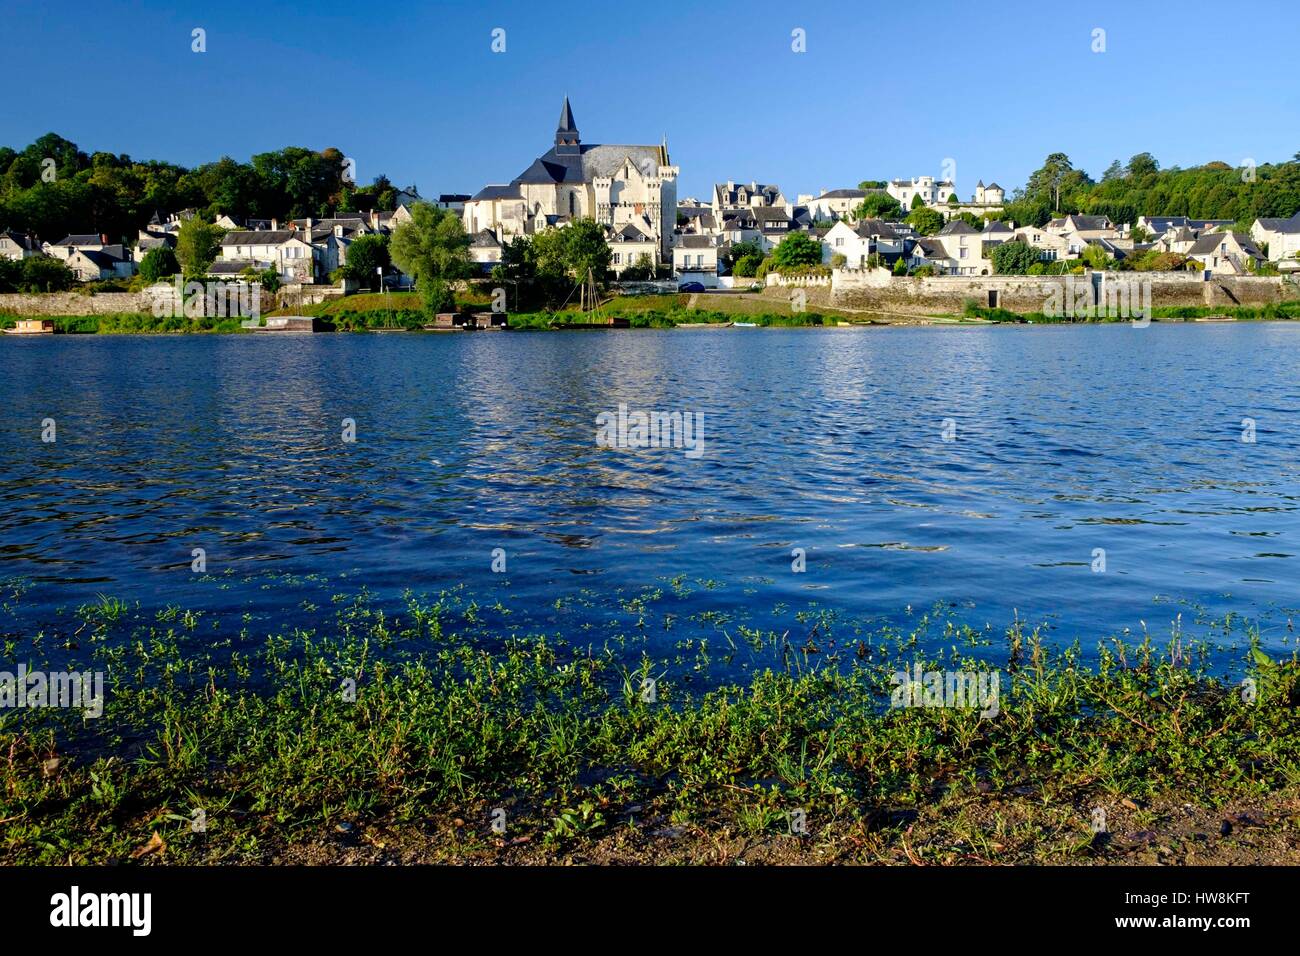 Frankreich, Indre et Loire, Loire Tal, Candes Saint Martin UNESCO Weltkulturerbe, entlang der Fluss Vienne, im Vordergrund die invasive Pflanze namens Floating Primrose - Weide - Ludwigia peploides Stockfoto